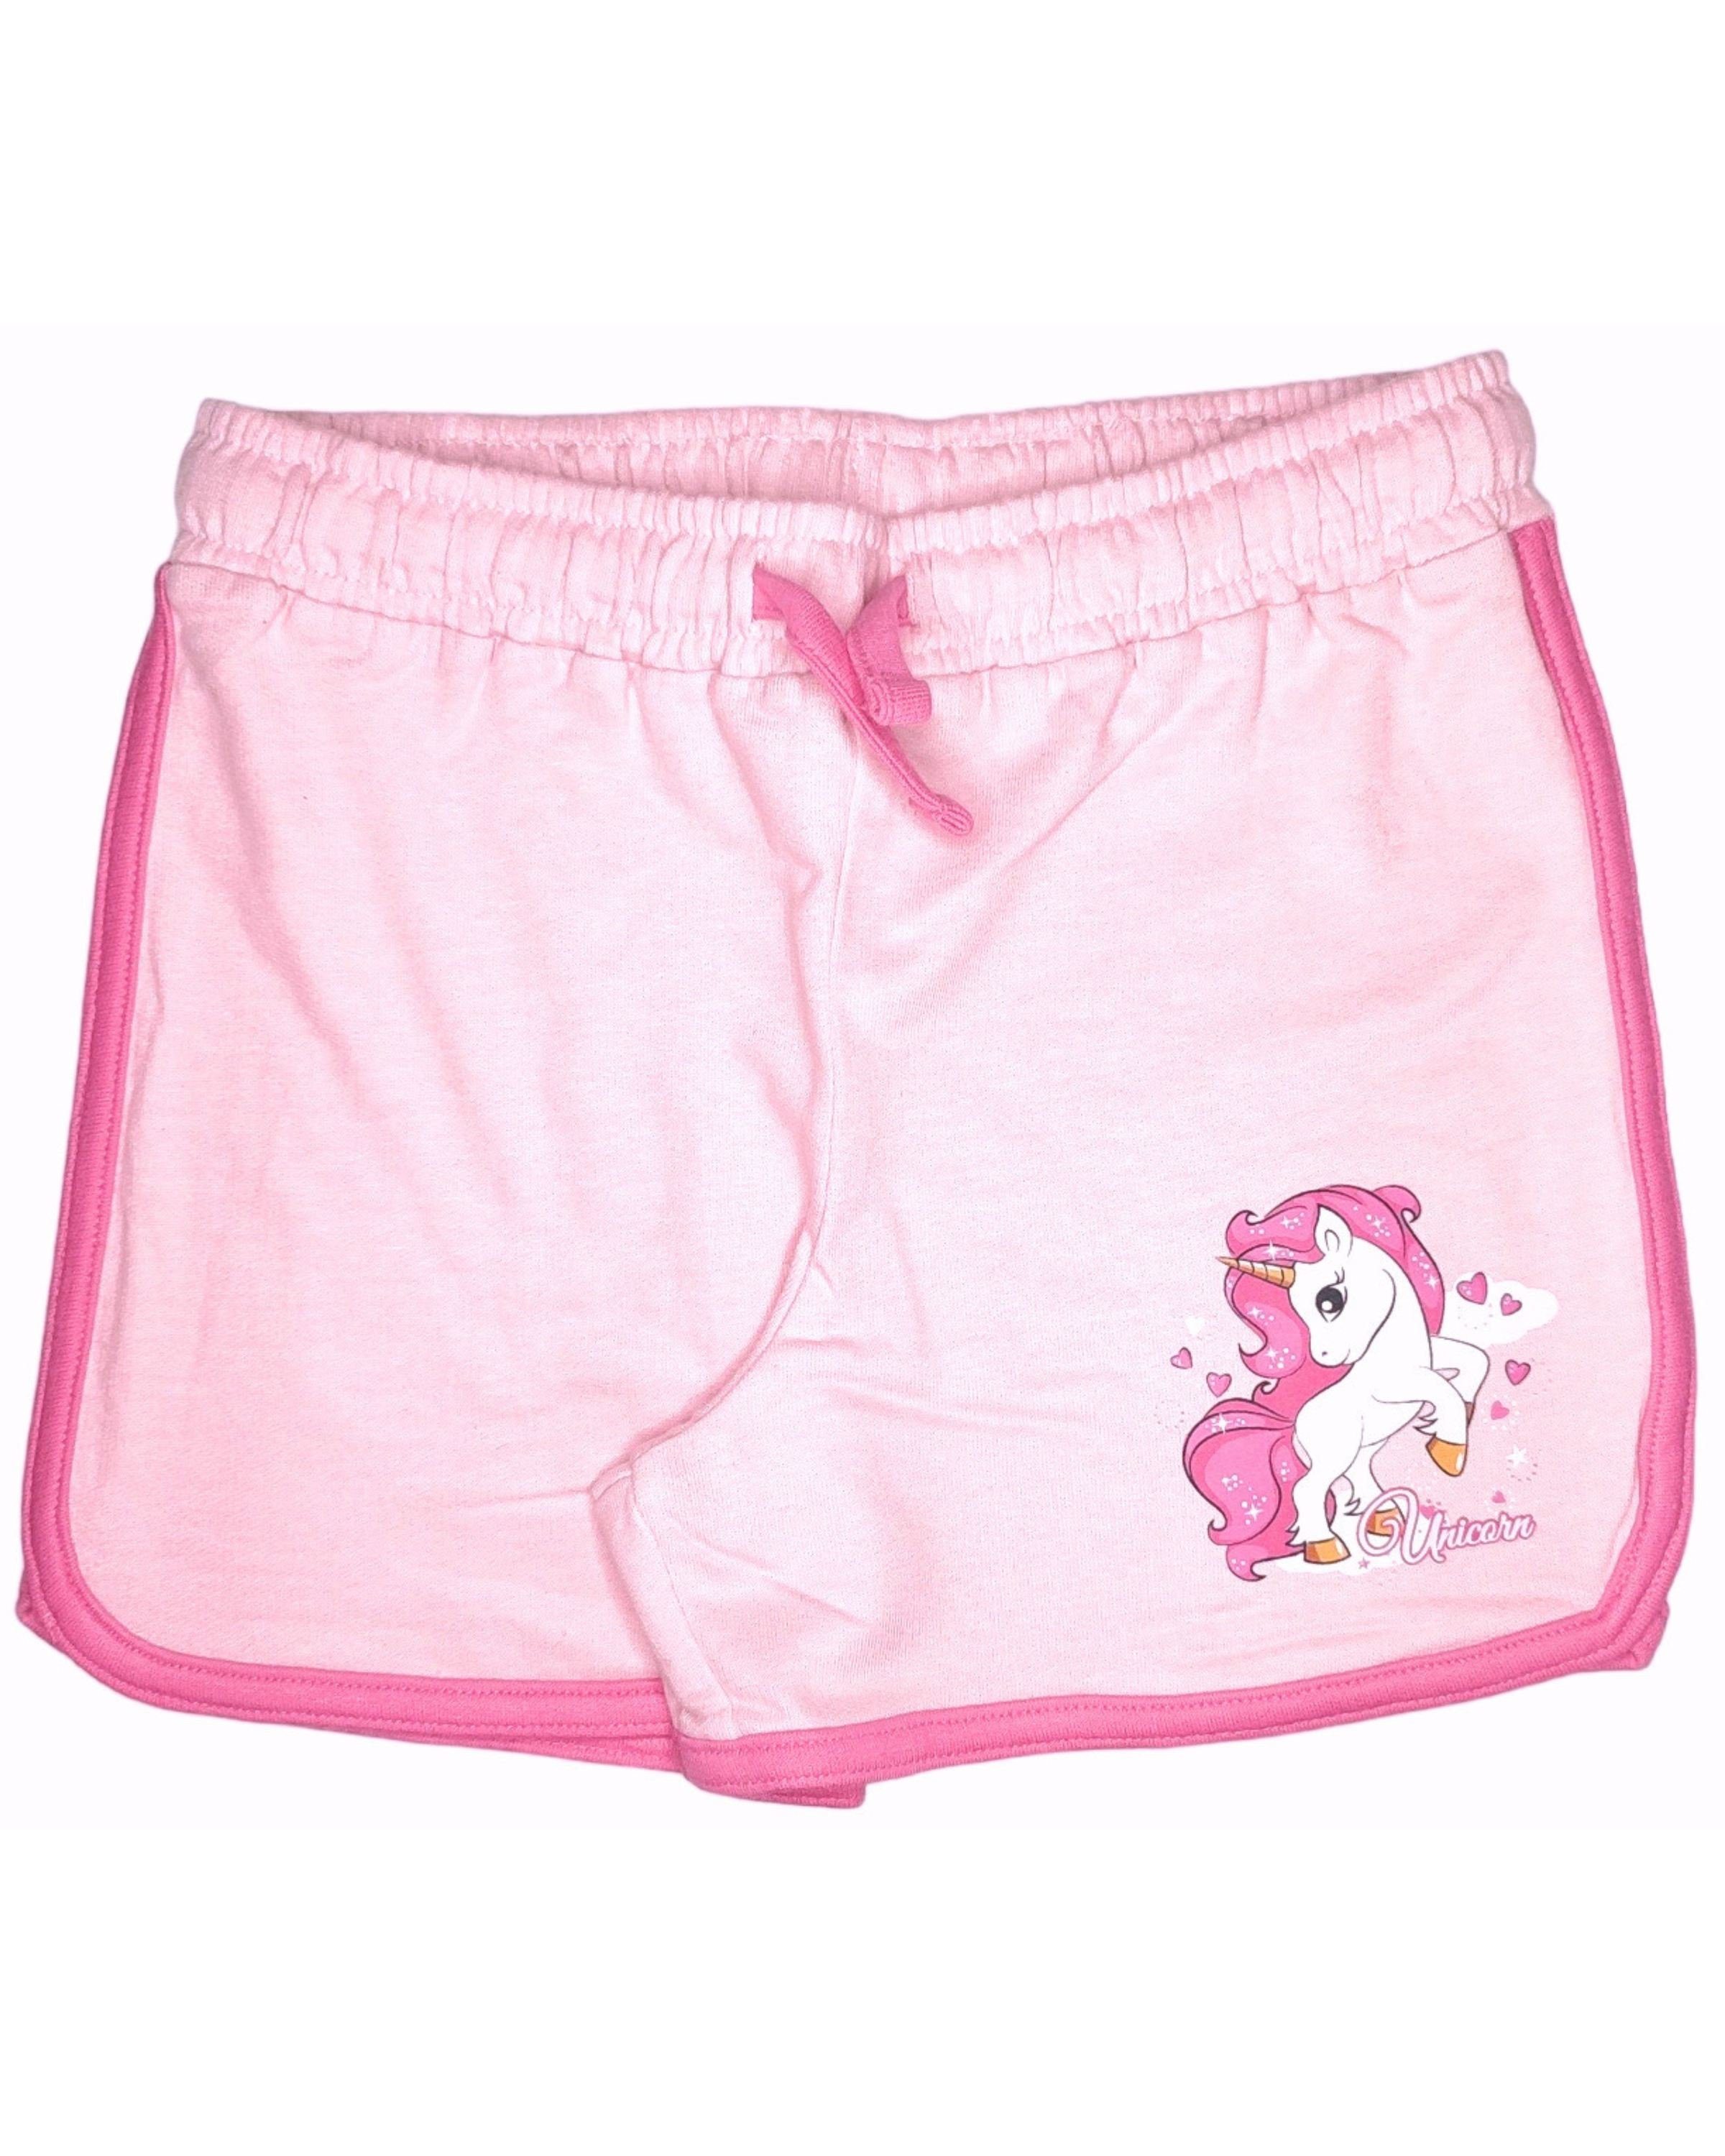 United Essentials Shorts Einhorn Mädchen kurze Hose aus Baumwolle Gr. 98 - 128 cm Rosa